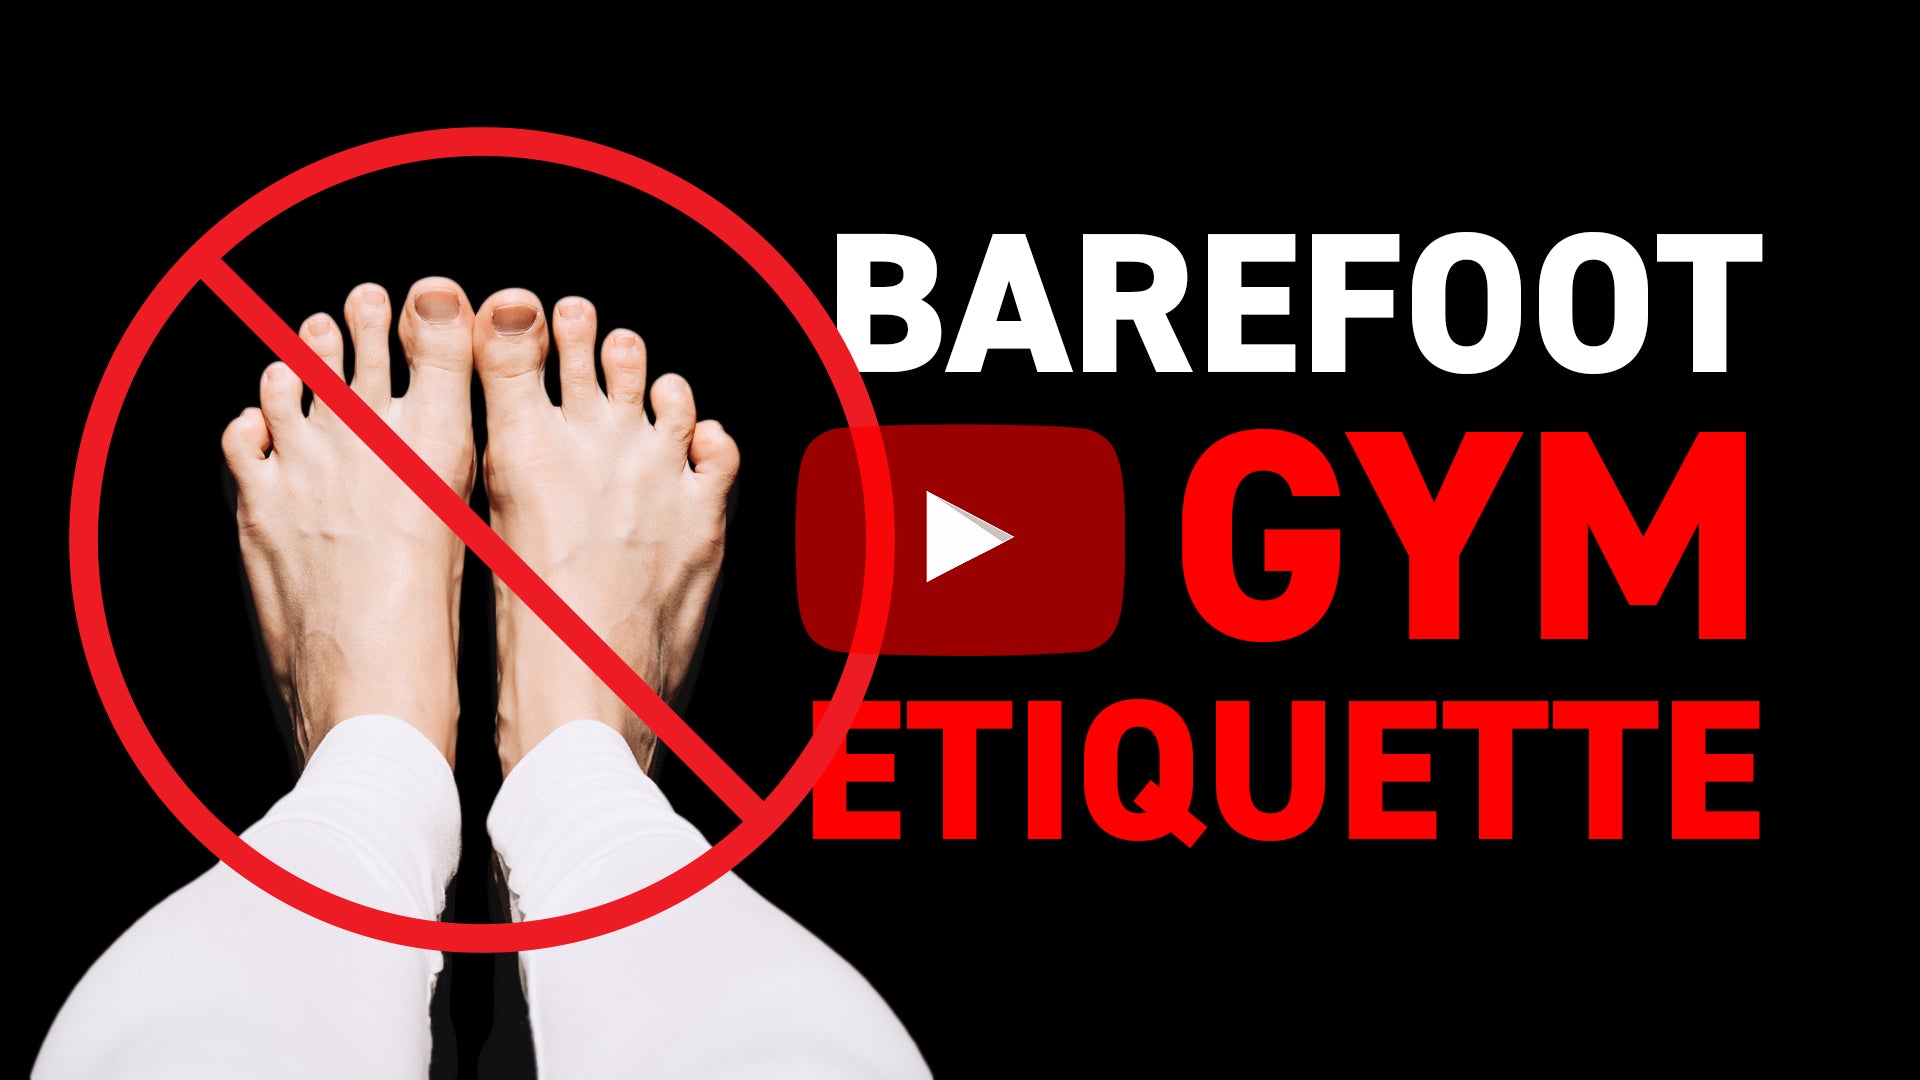 Barefoot Gym Etiquette